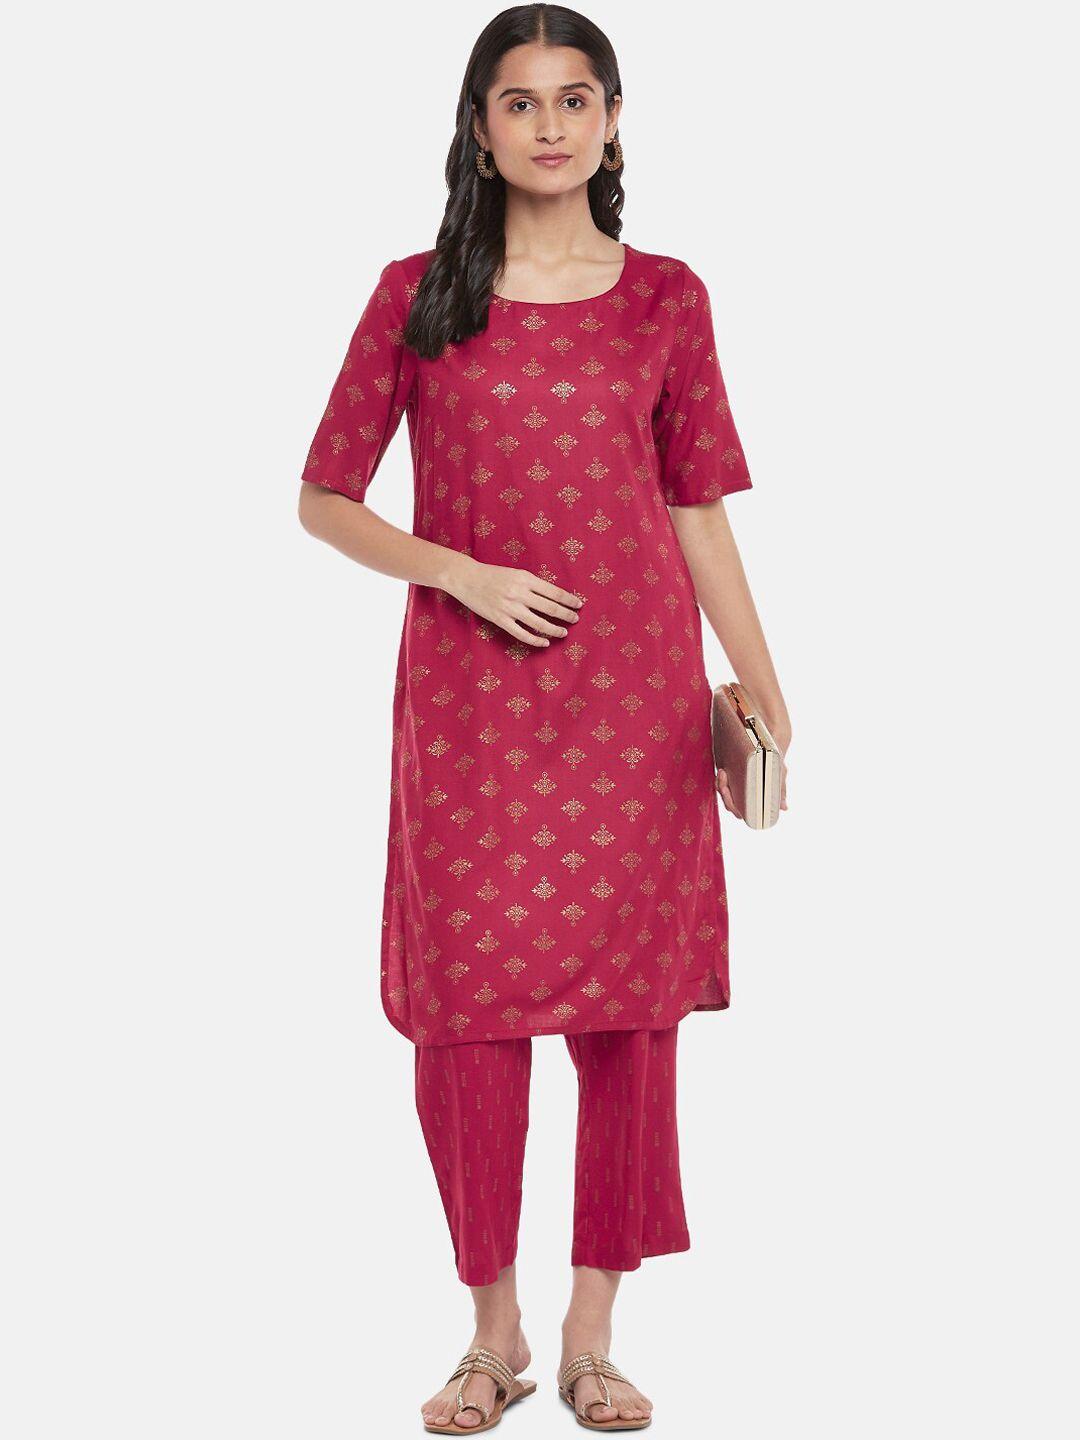 rangmanch by pantaloons women pink ethnic motifs printed kurta set